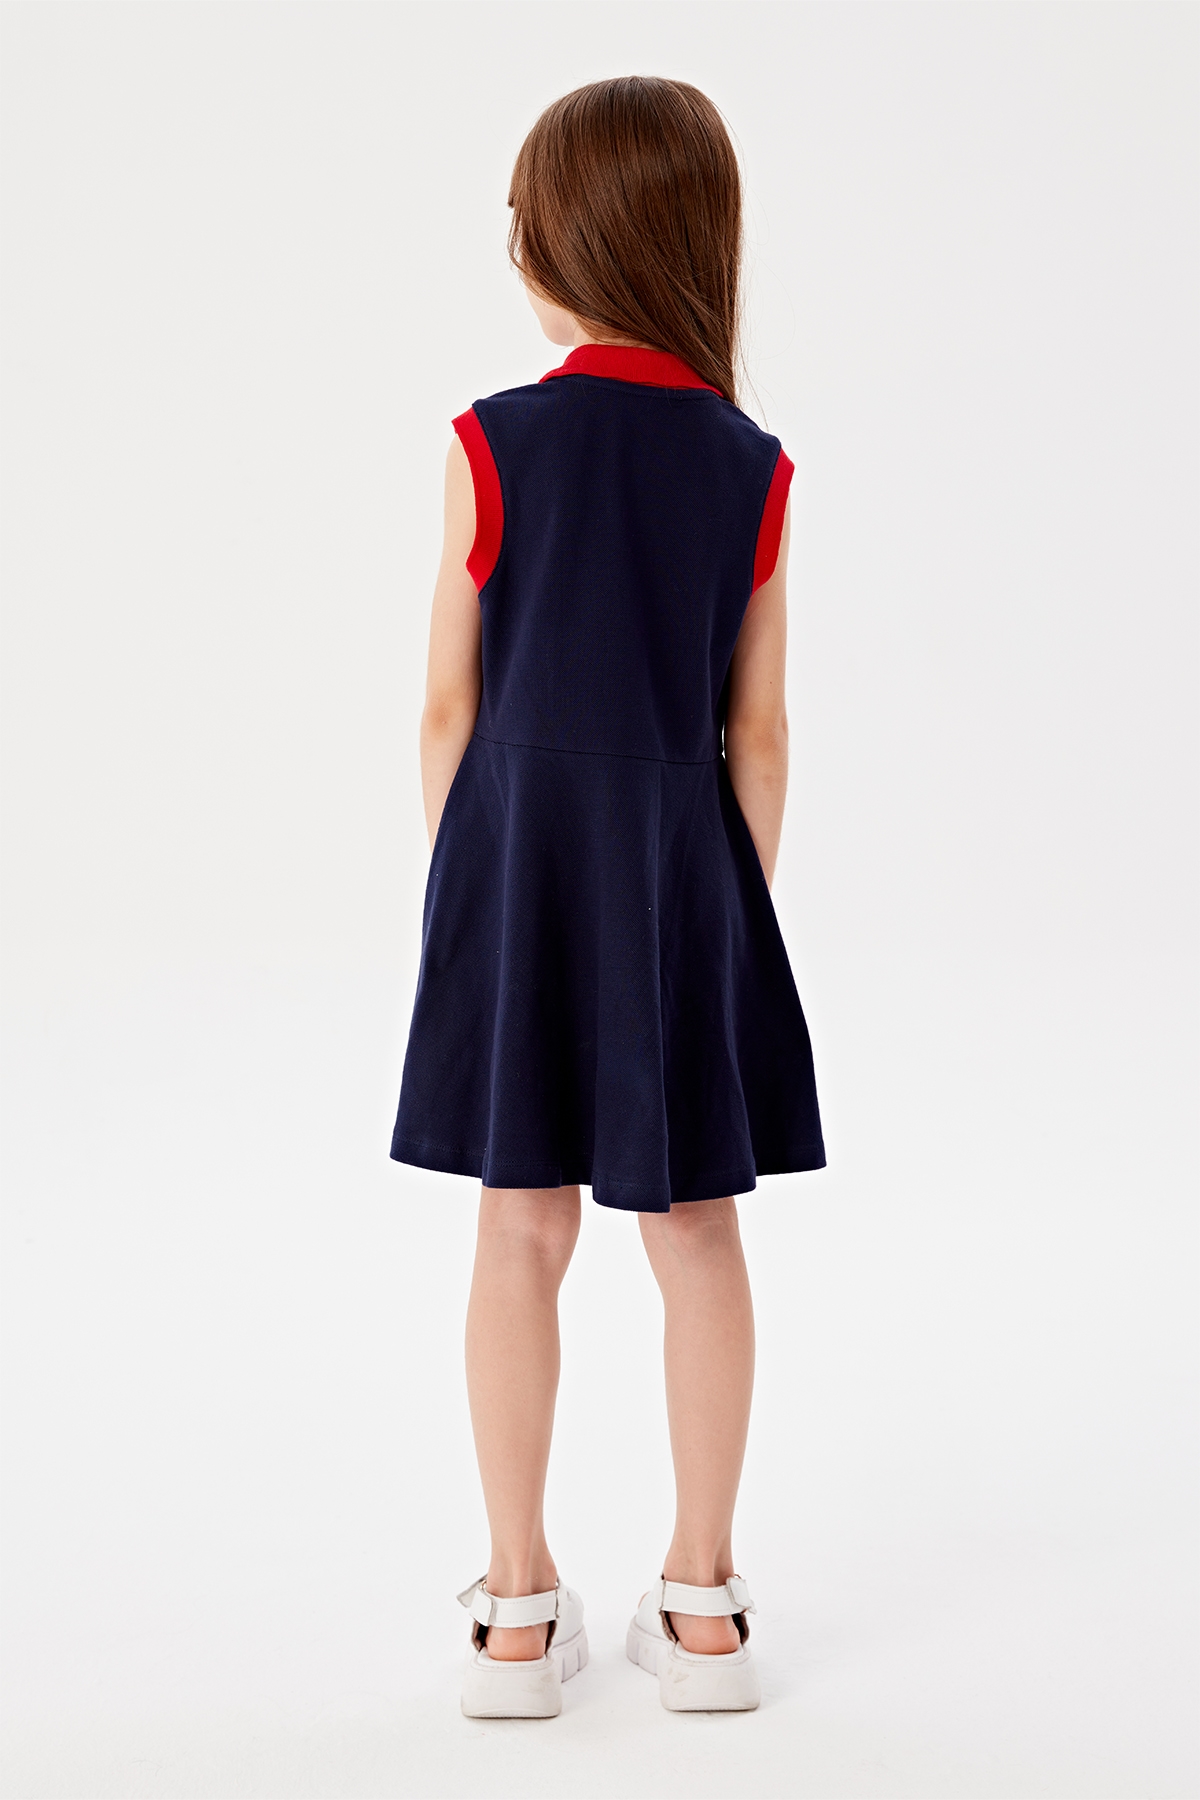 Kız Çocuk Lacivert Elbise